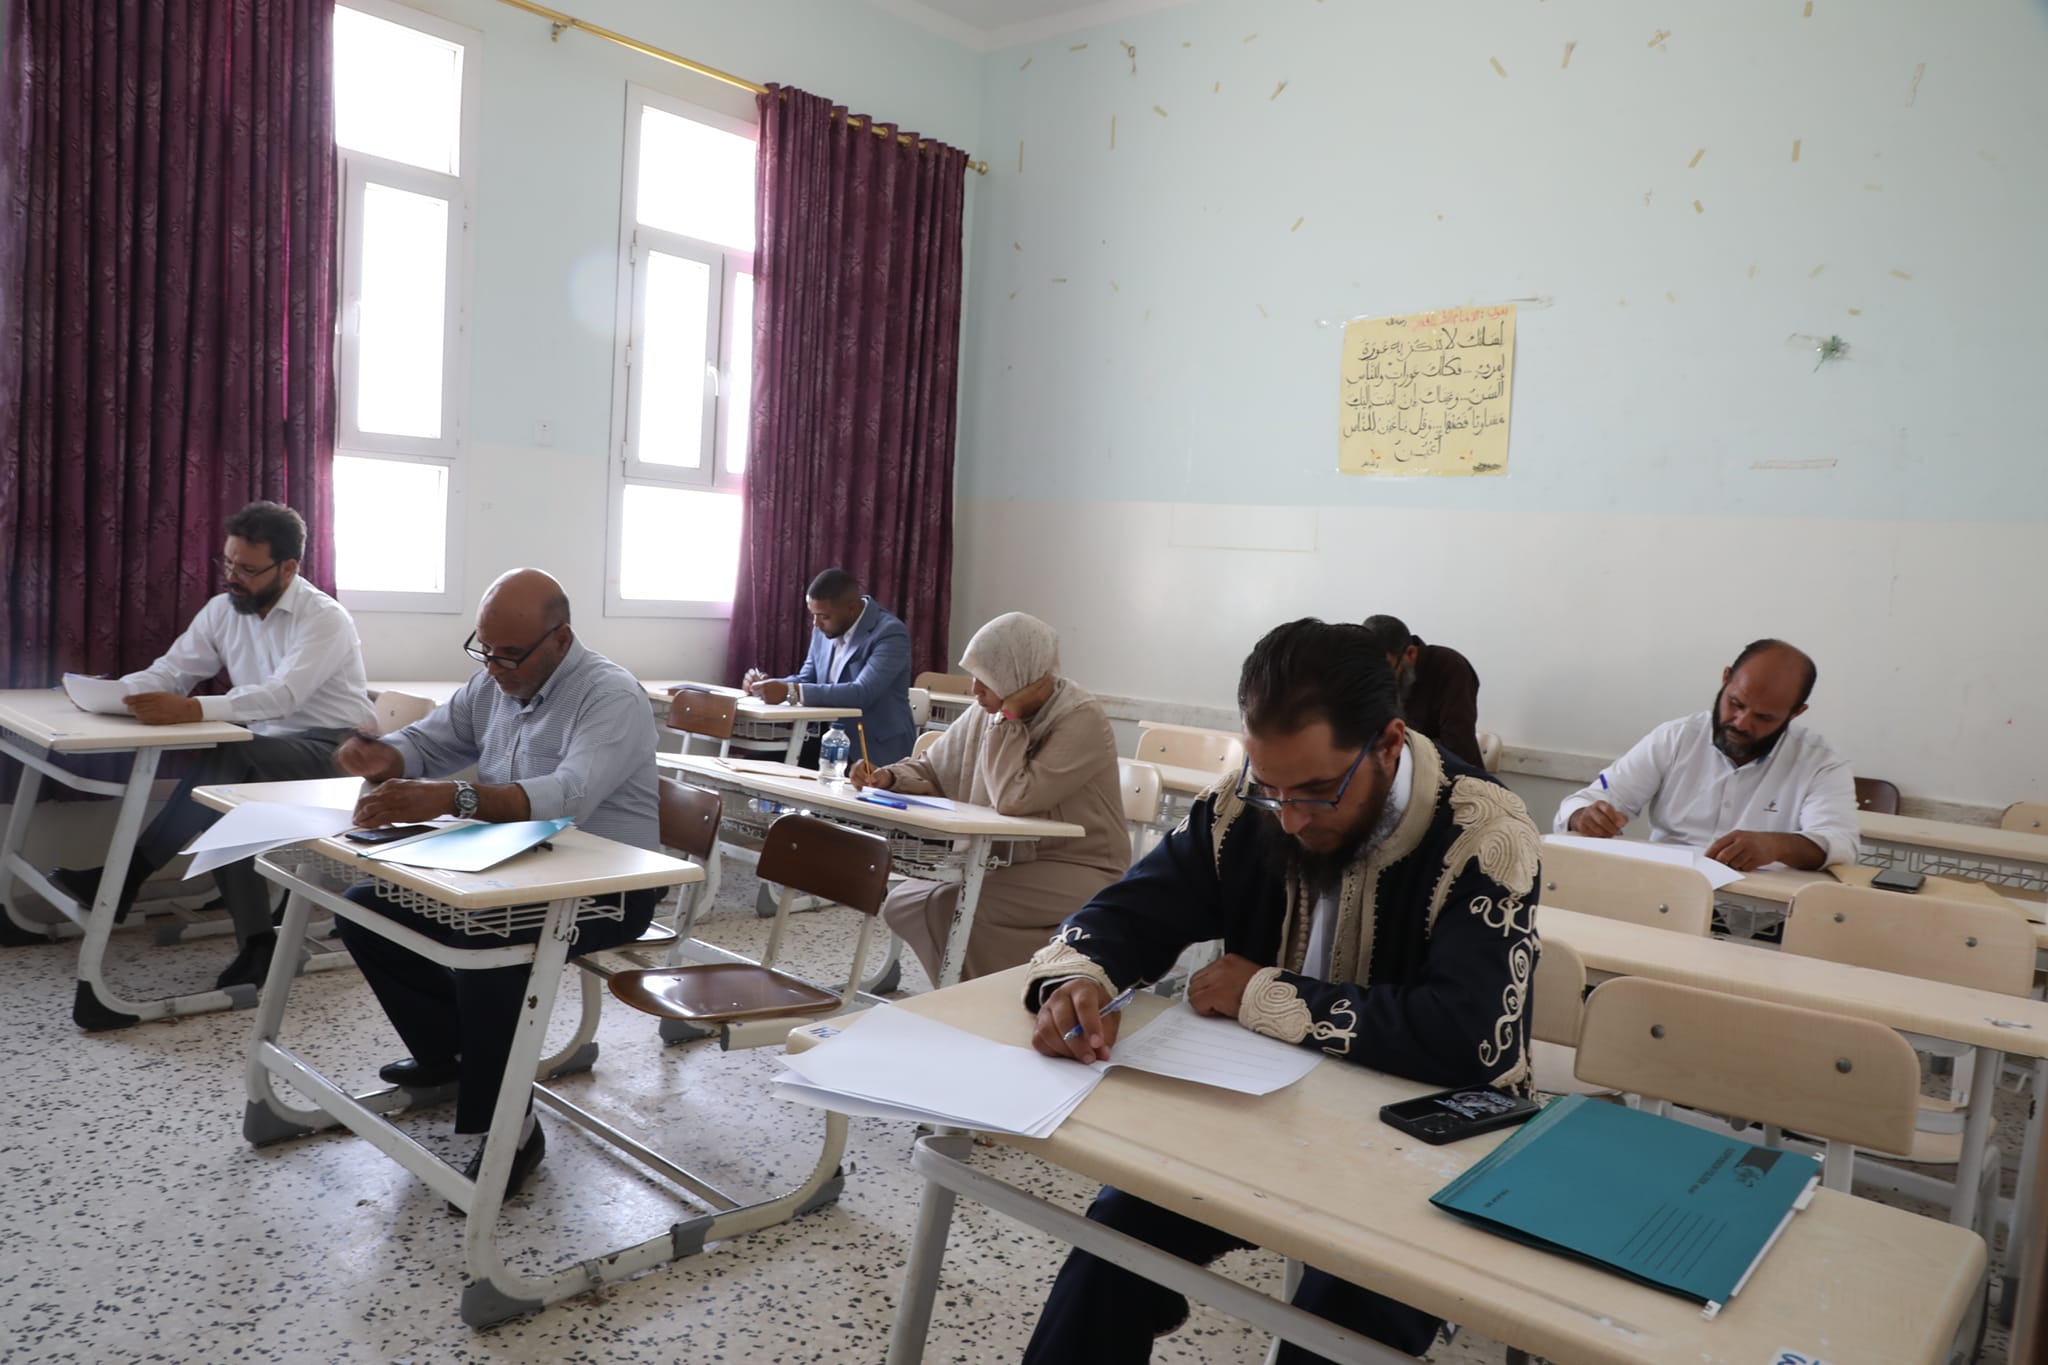  المركز العام للتدريب وتطوير التعليم يجرى امتحانات المفاضلة بمنطقة الجبل الغربي بمشاركة 25 مترشح . 